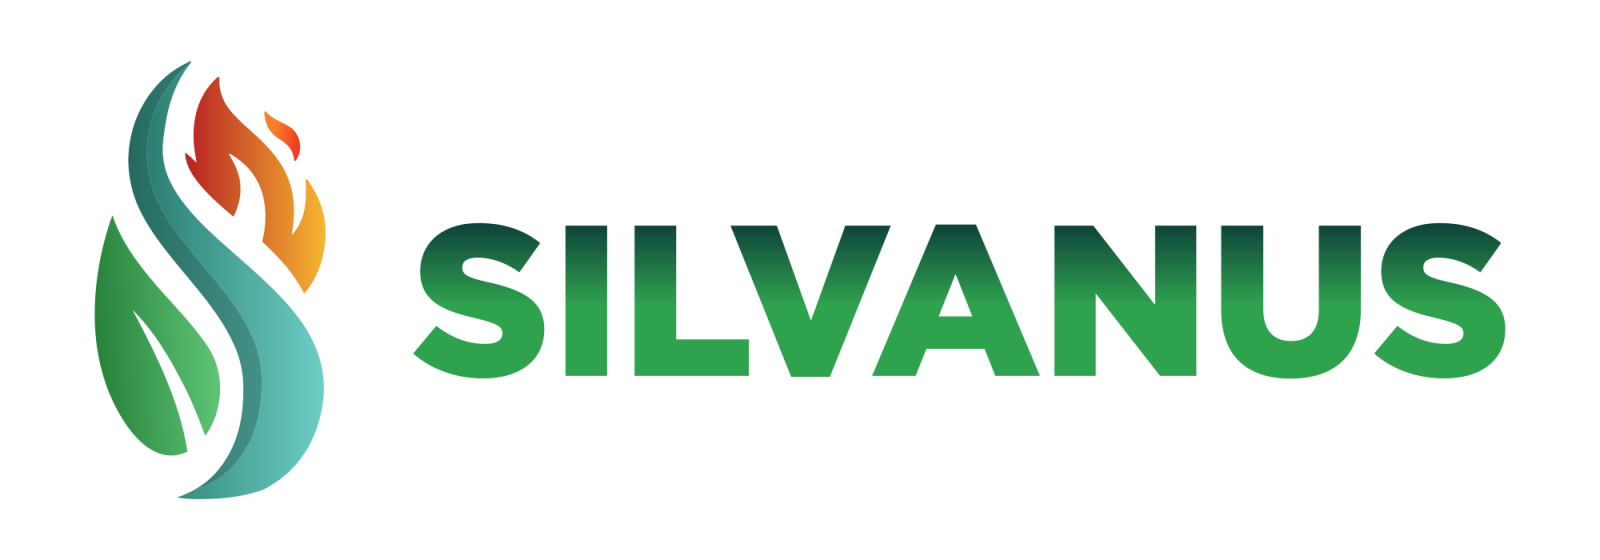 SILVANUS logo (2000x700).png